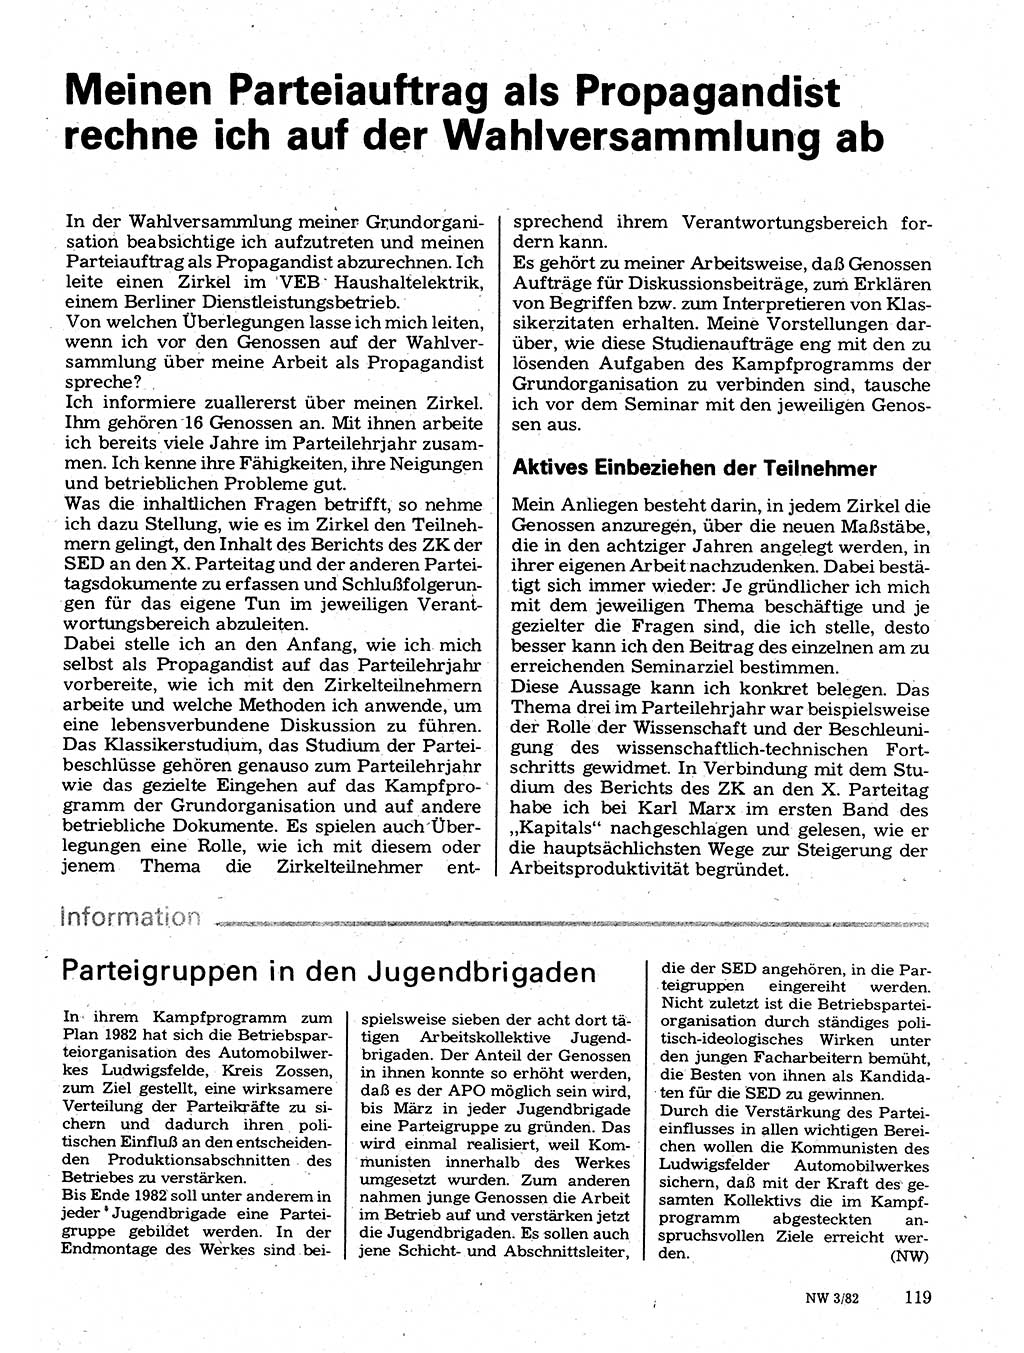 Neuer Weg (NW), Organ des Zentralkomitees (ZK) der SED (Sozialistische Einheitspartei Deutschlands) für Fragen des Parteilebens, 37. Jahrgang [Deutsche Demokratische Republik (DDR)] 1982, Seite 119 (NW ZK SED DDR 1982, S. 119)